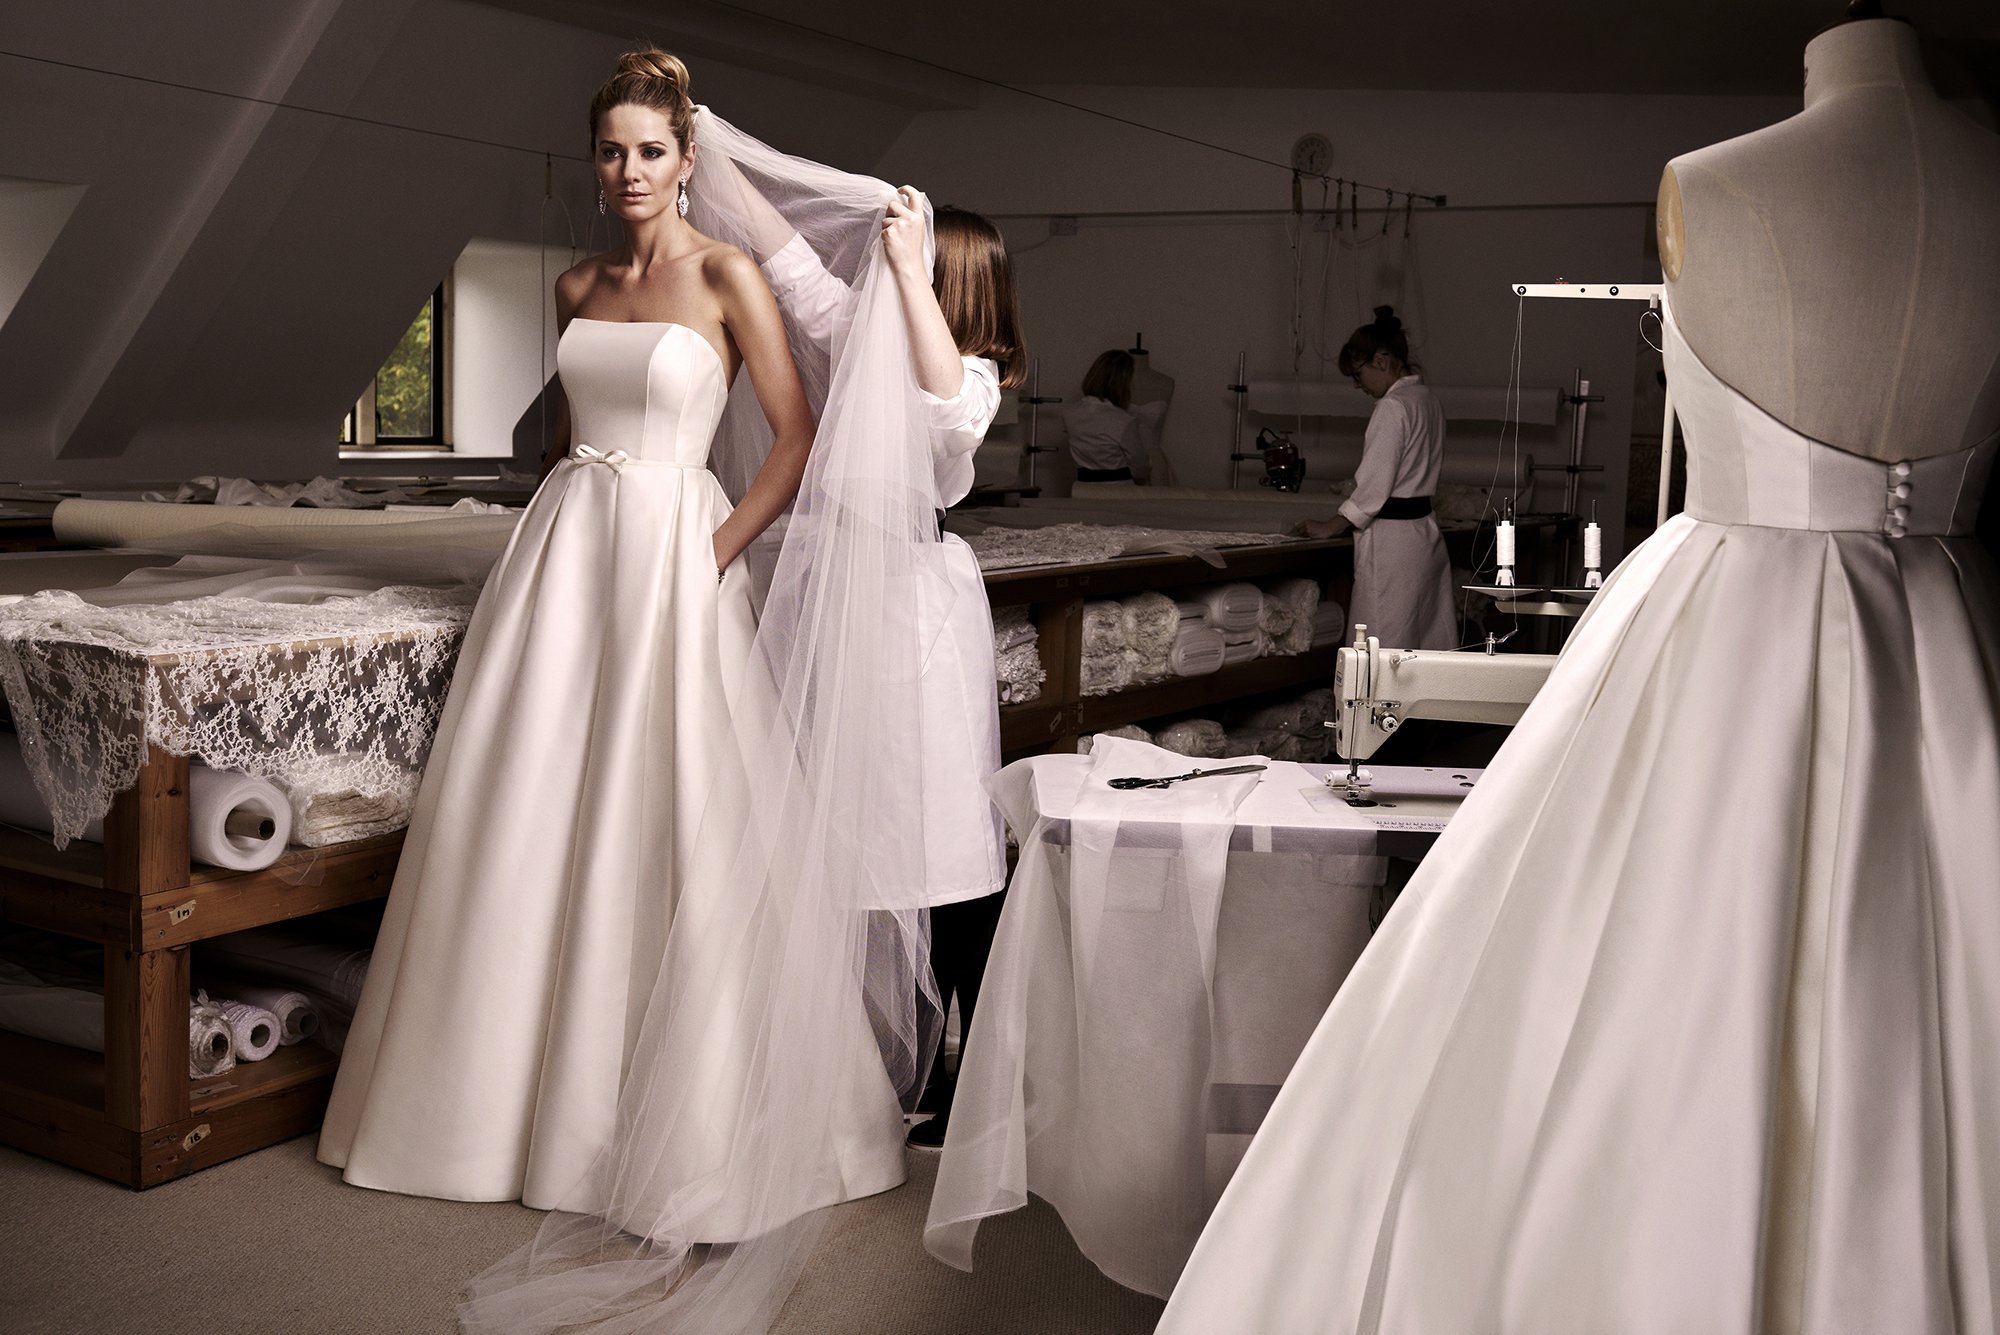 Примерка и покупка свадебного платья: советы от jully bride